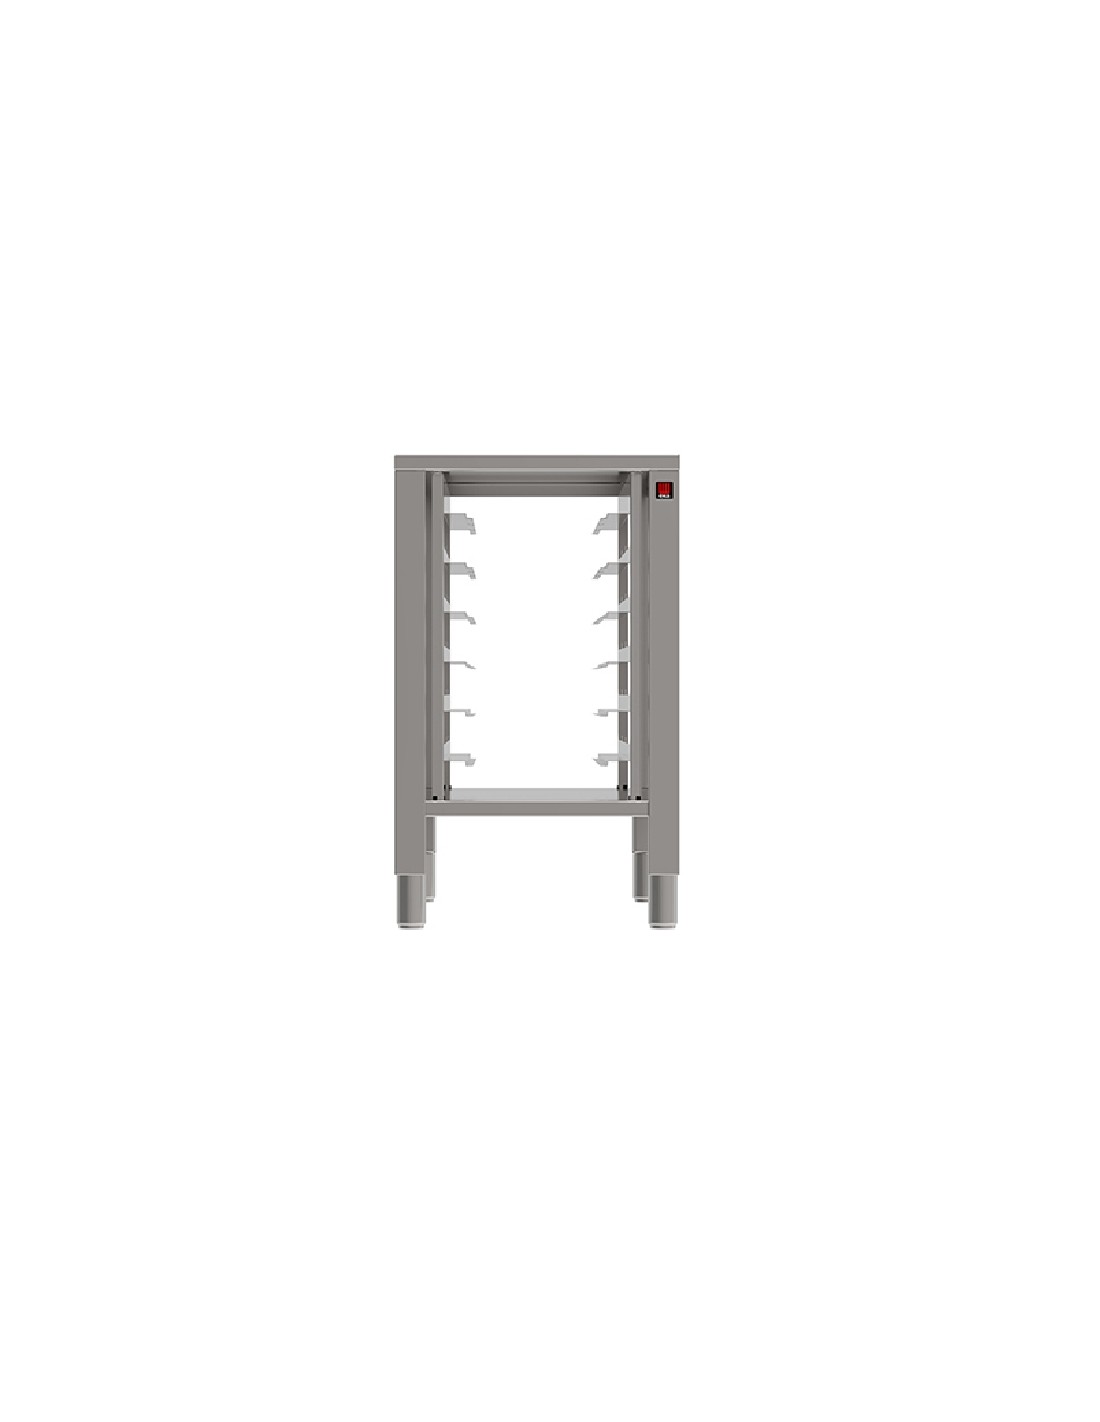 Tavolo fisso - Acciaio inox AISI 430 - Con supporti - Per forni 6-10 teglie compatti - Dimensioni cm 50 x 73.6 x77h